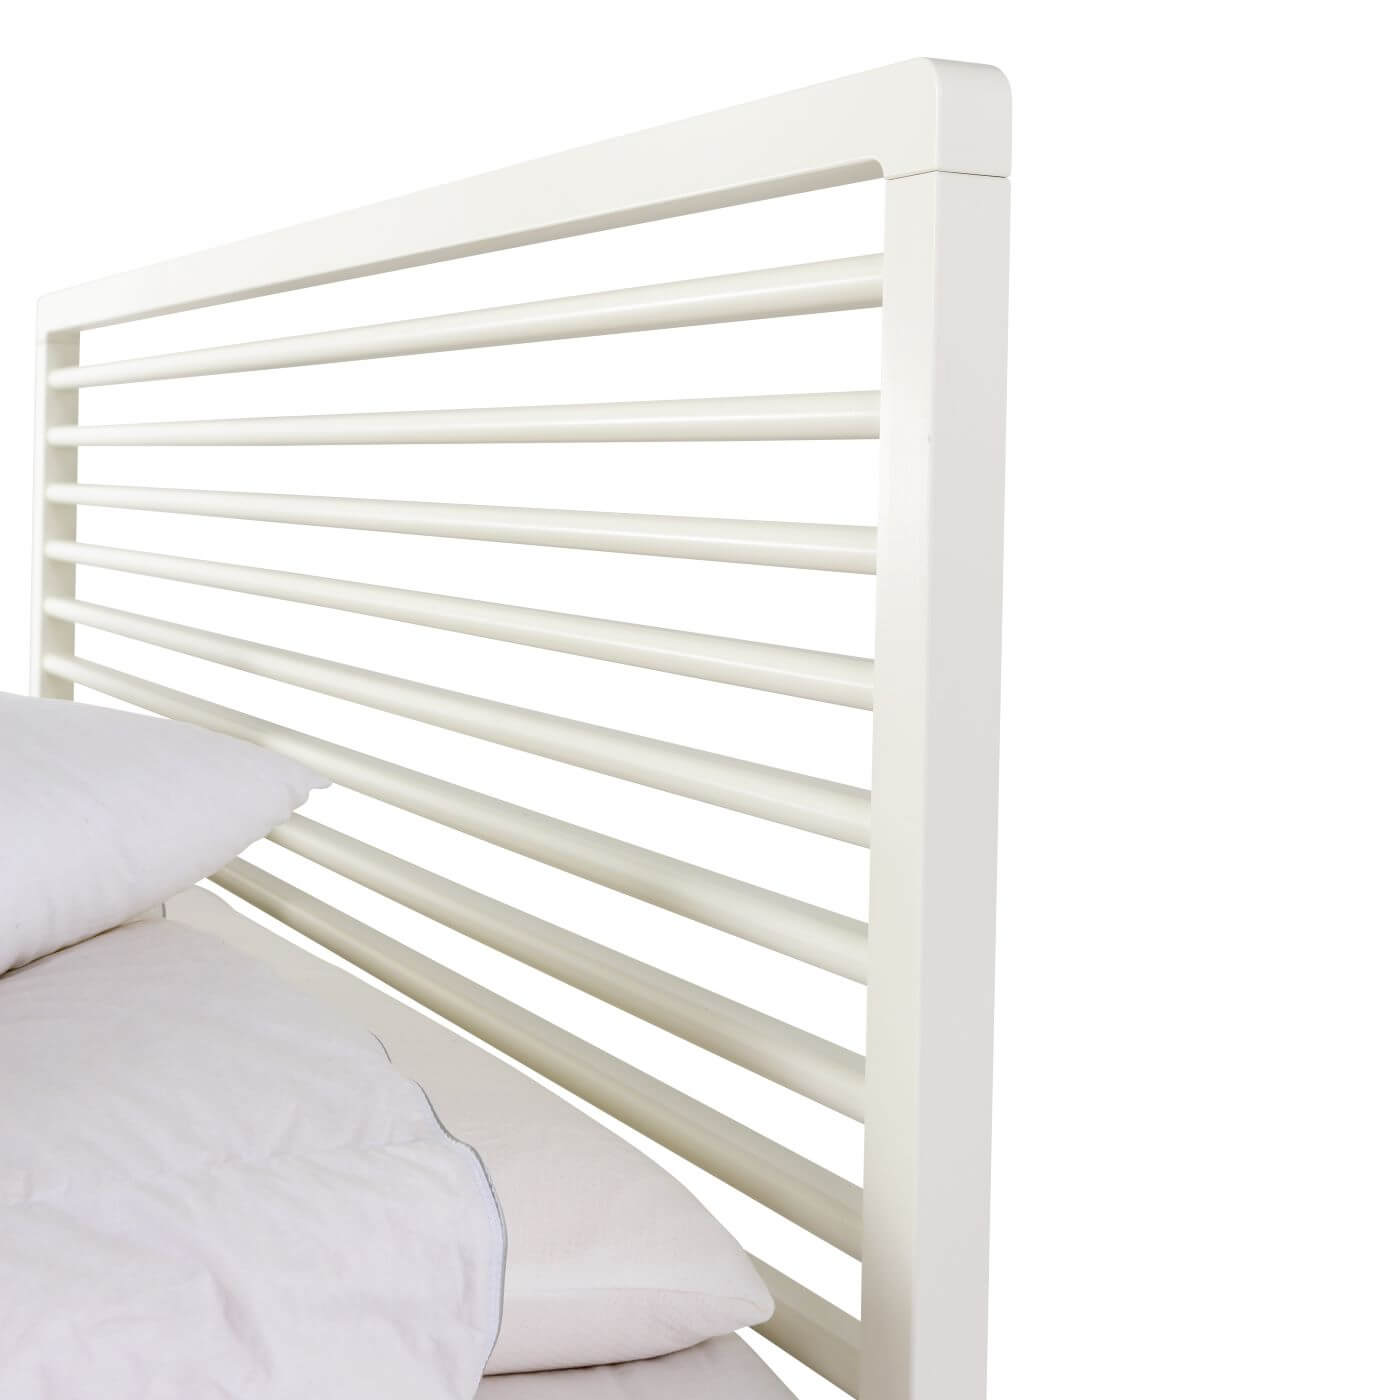 Designerskie łóżko białe LENNU. Ażurowym wysoki szczyt łóżka do sypialni z drewna brzozy skandynawskiej lakierowanej na kolor biały. Nowoczesny design